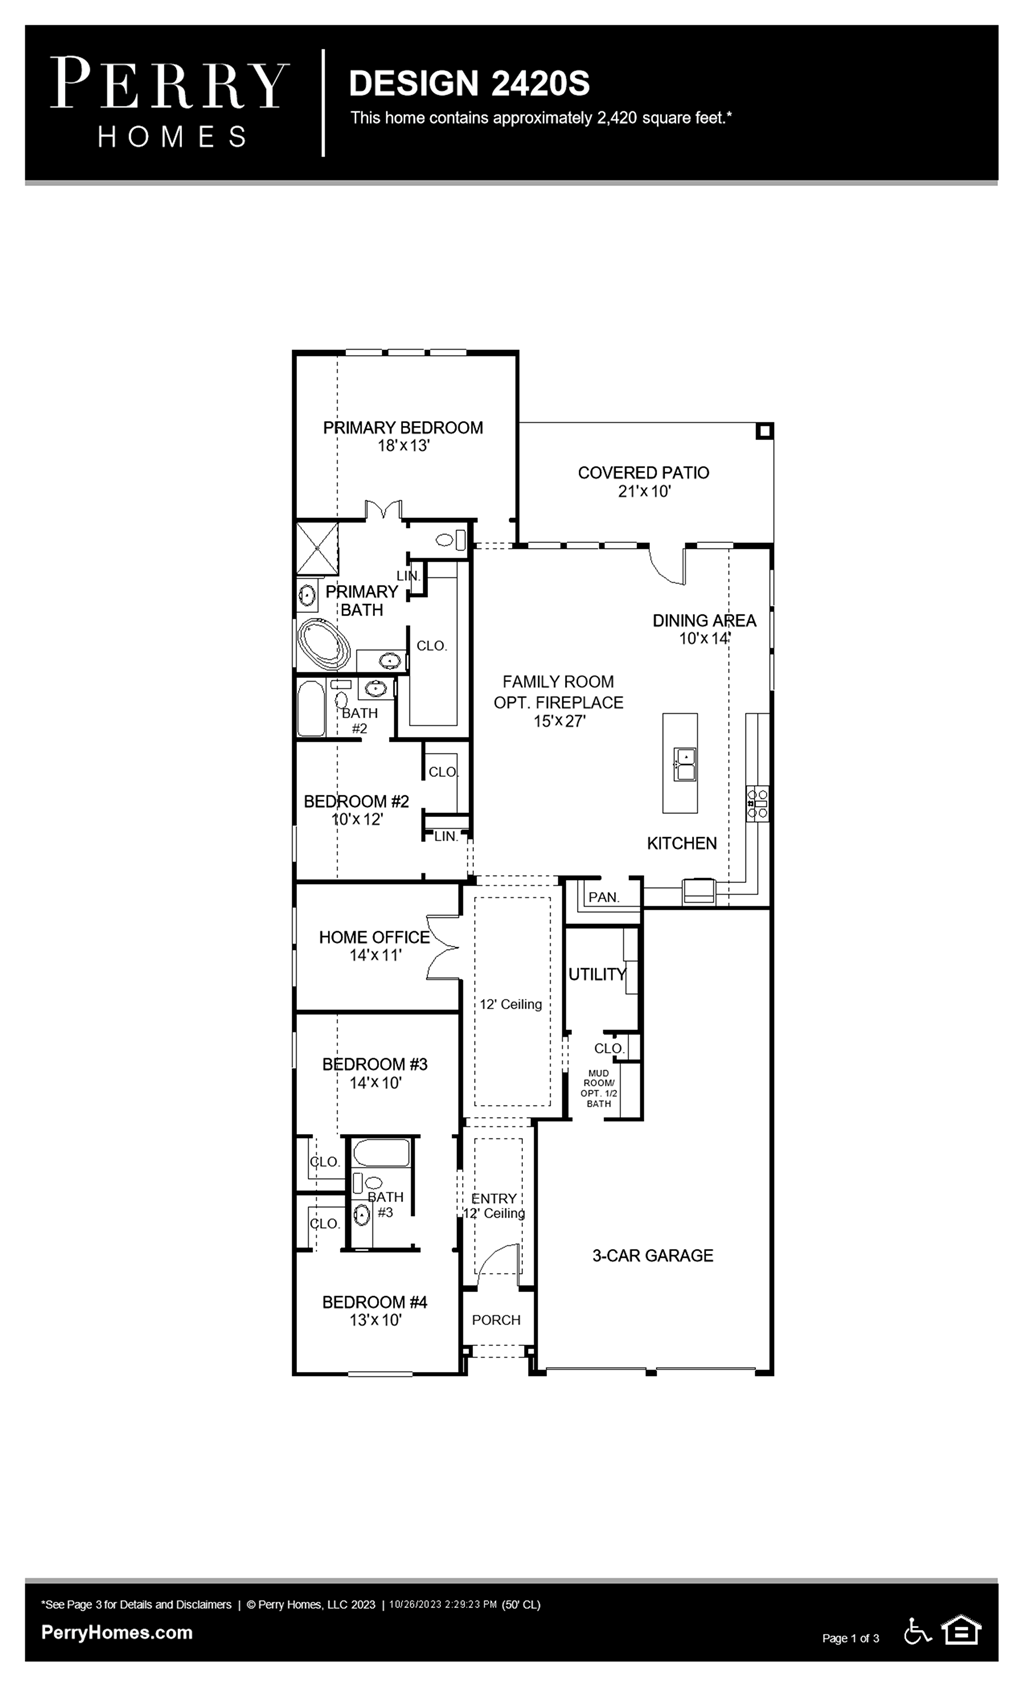 Floor Plan for 2420S